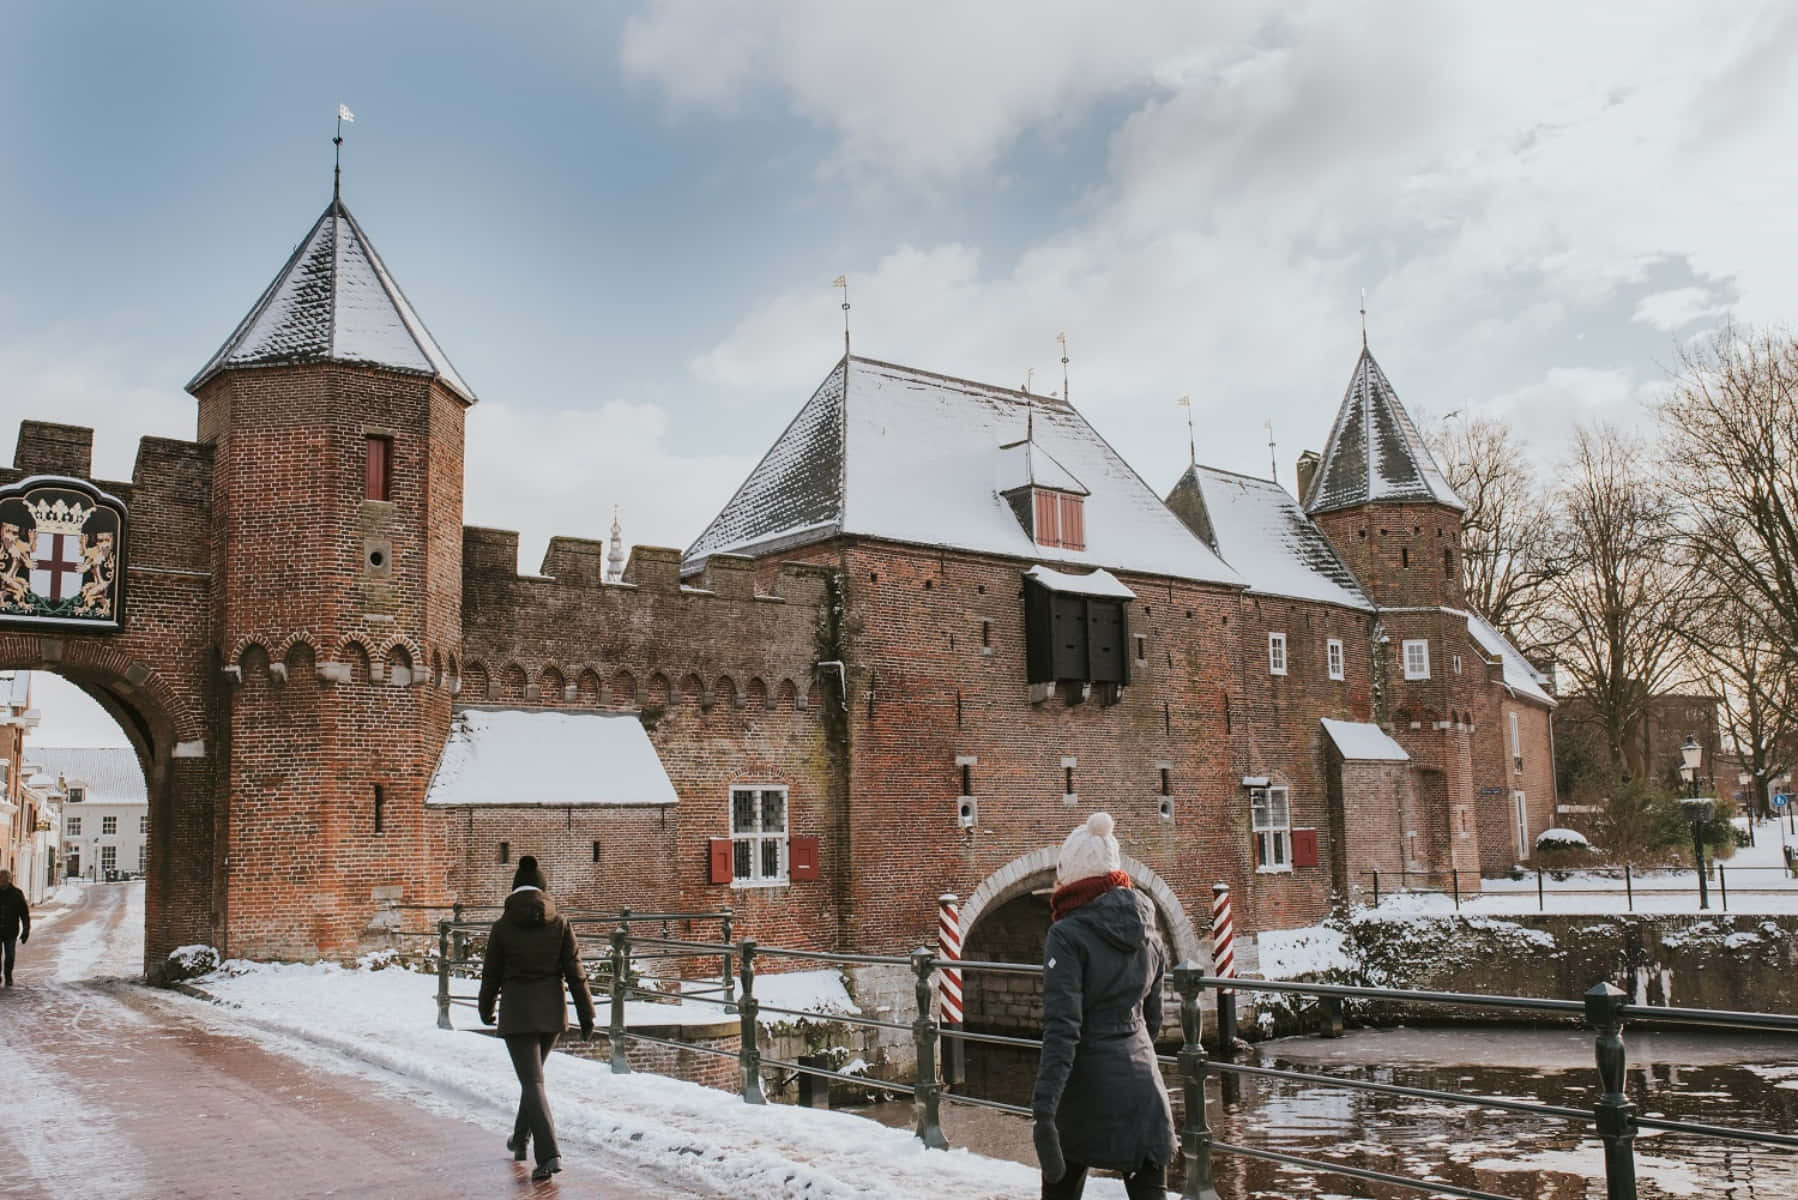 Amersfoort Medieval Gate Winter Scene Wallpaper